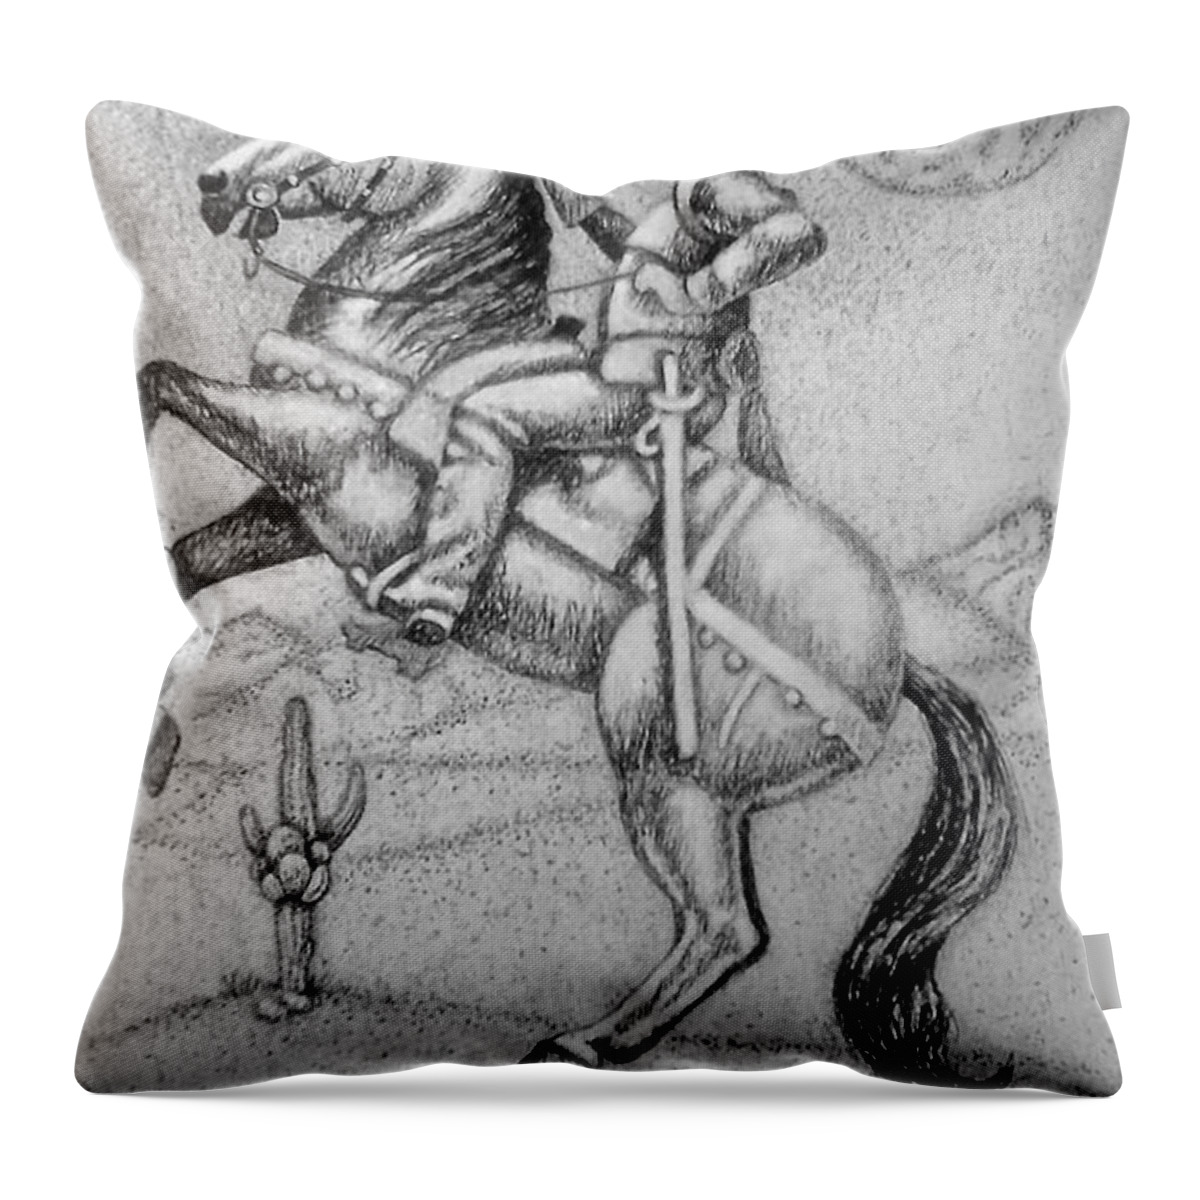 Art Throw Pillow featuring the drawing Conquistador Hernan Cortes by Bern Miller